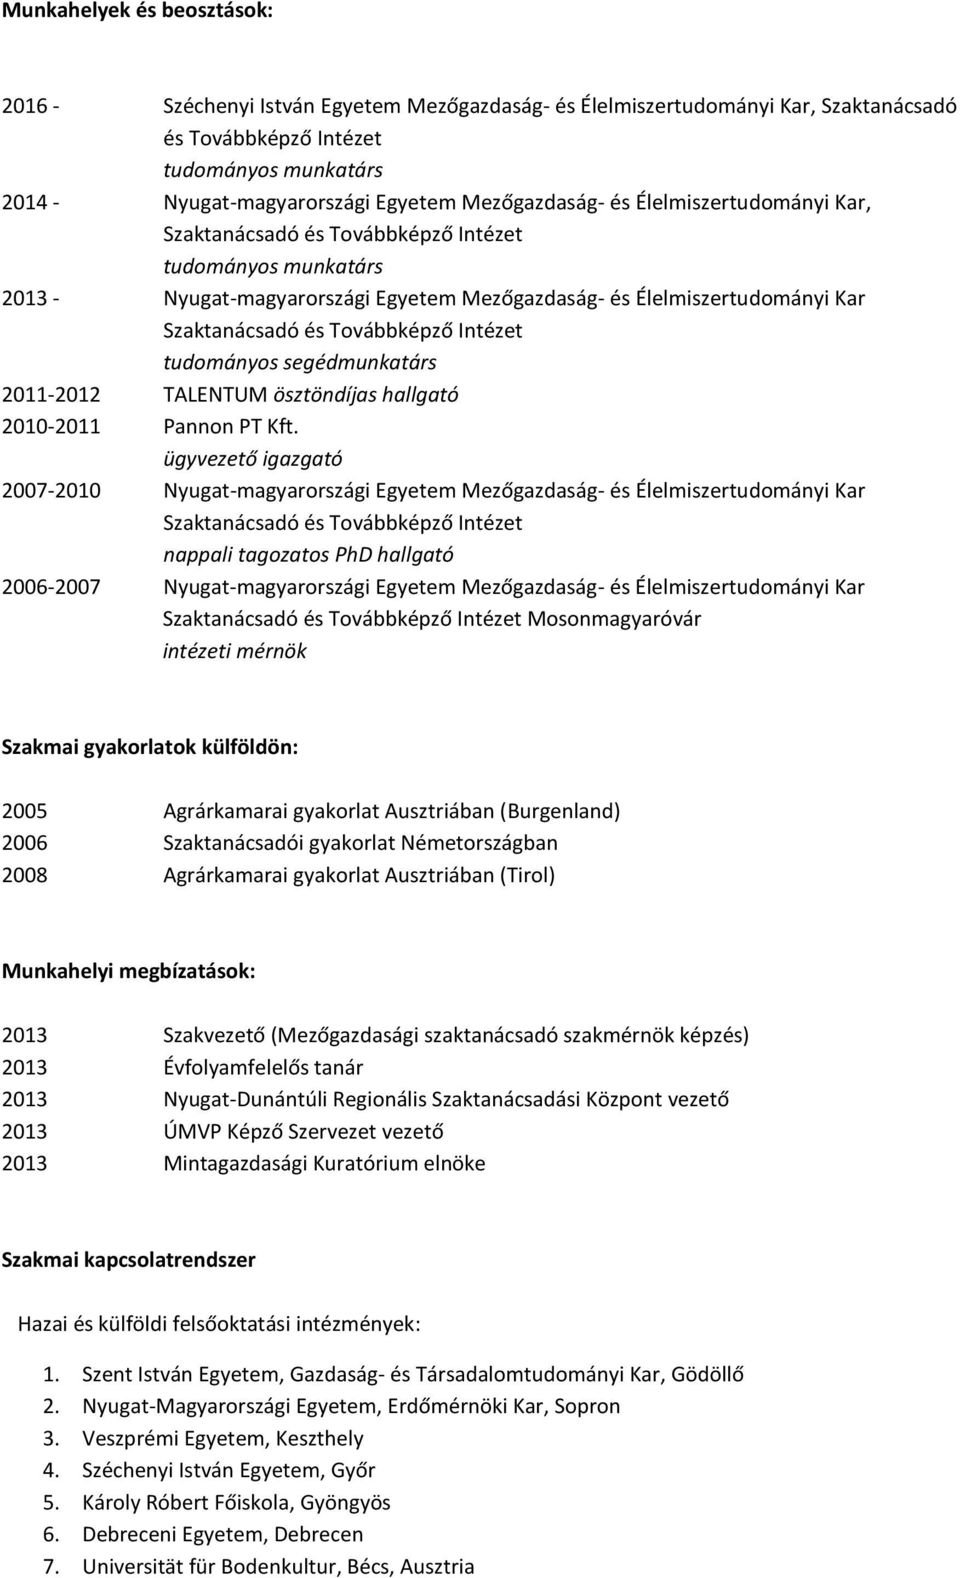 ügyvezető igazgató 2007-2010 nappali tagozatos PhD hallgató 2006-2007 intézeti mérnök Szakmai gyakorlatok külföldön: 2005 Agrárkamarai gyakorlat Ausztriában (Burgenland) 2006 Szaktanácsadói gyakorlat